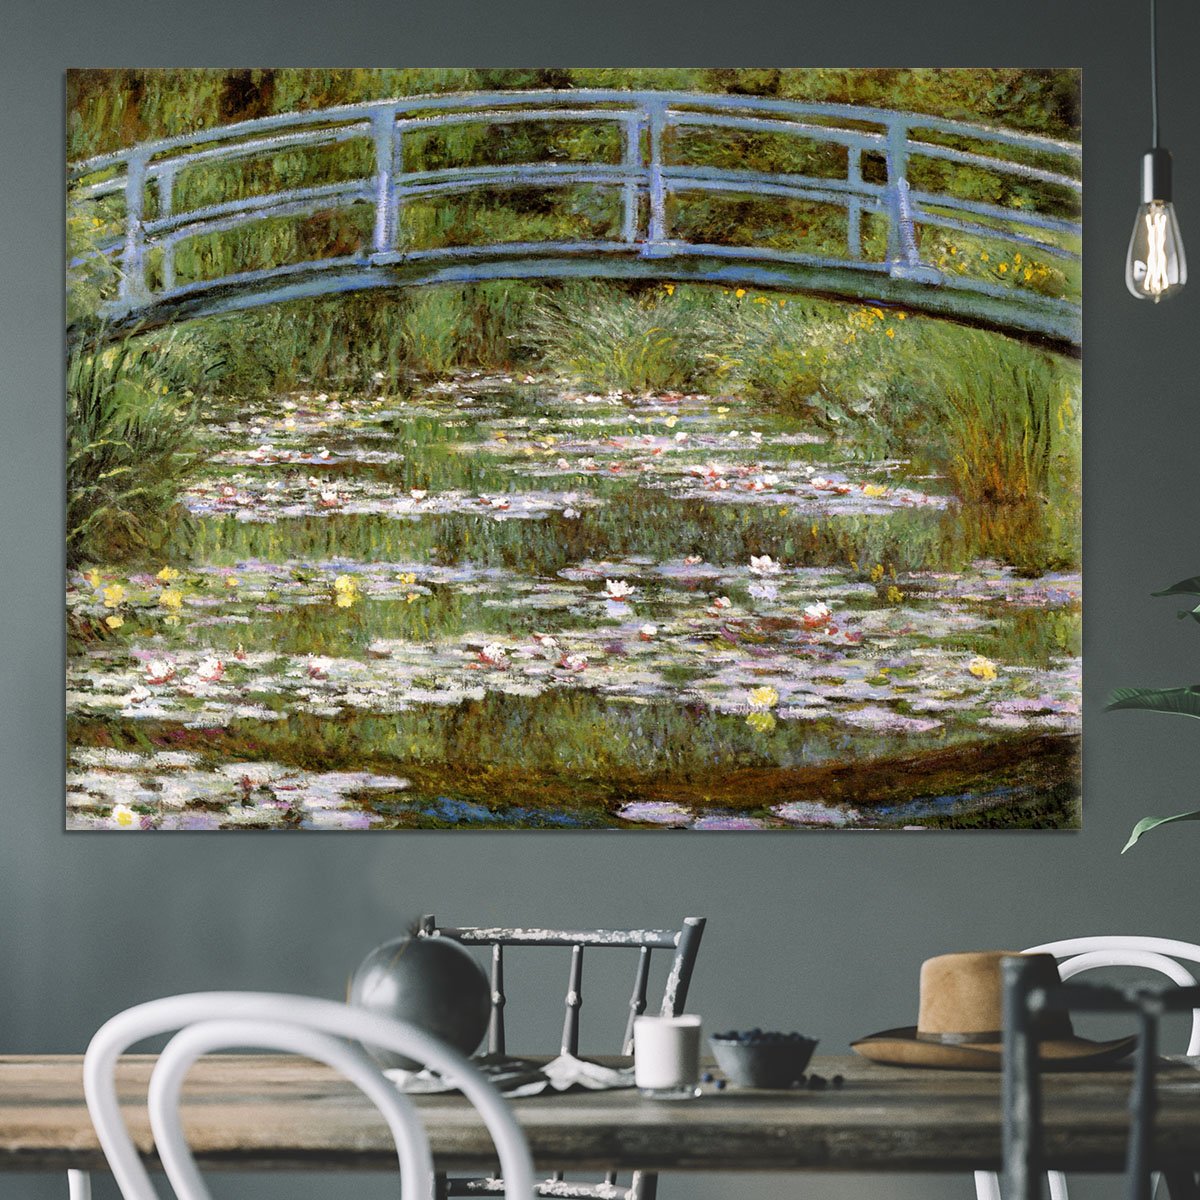 Le Pont Japonais by Monet Canvas Print or Poster